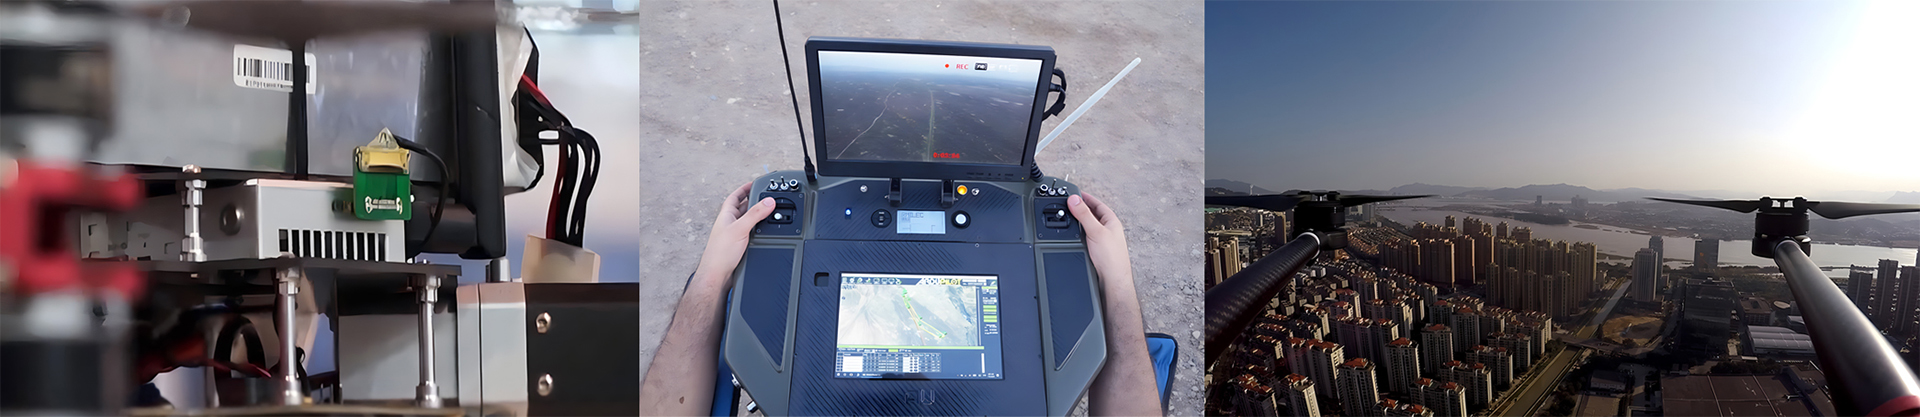 FIP2410-10km-UAV-Digital-ataata-kaituku-tono-tauaari